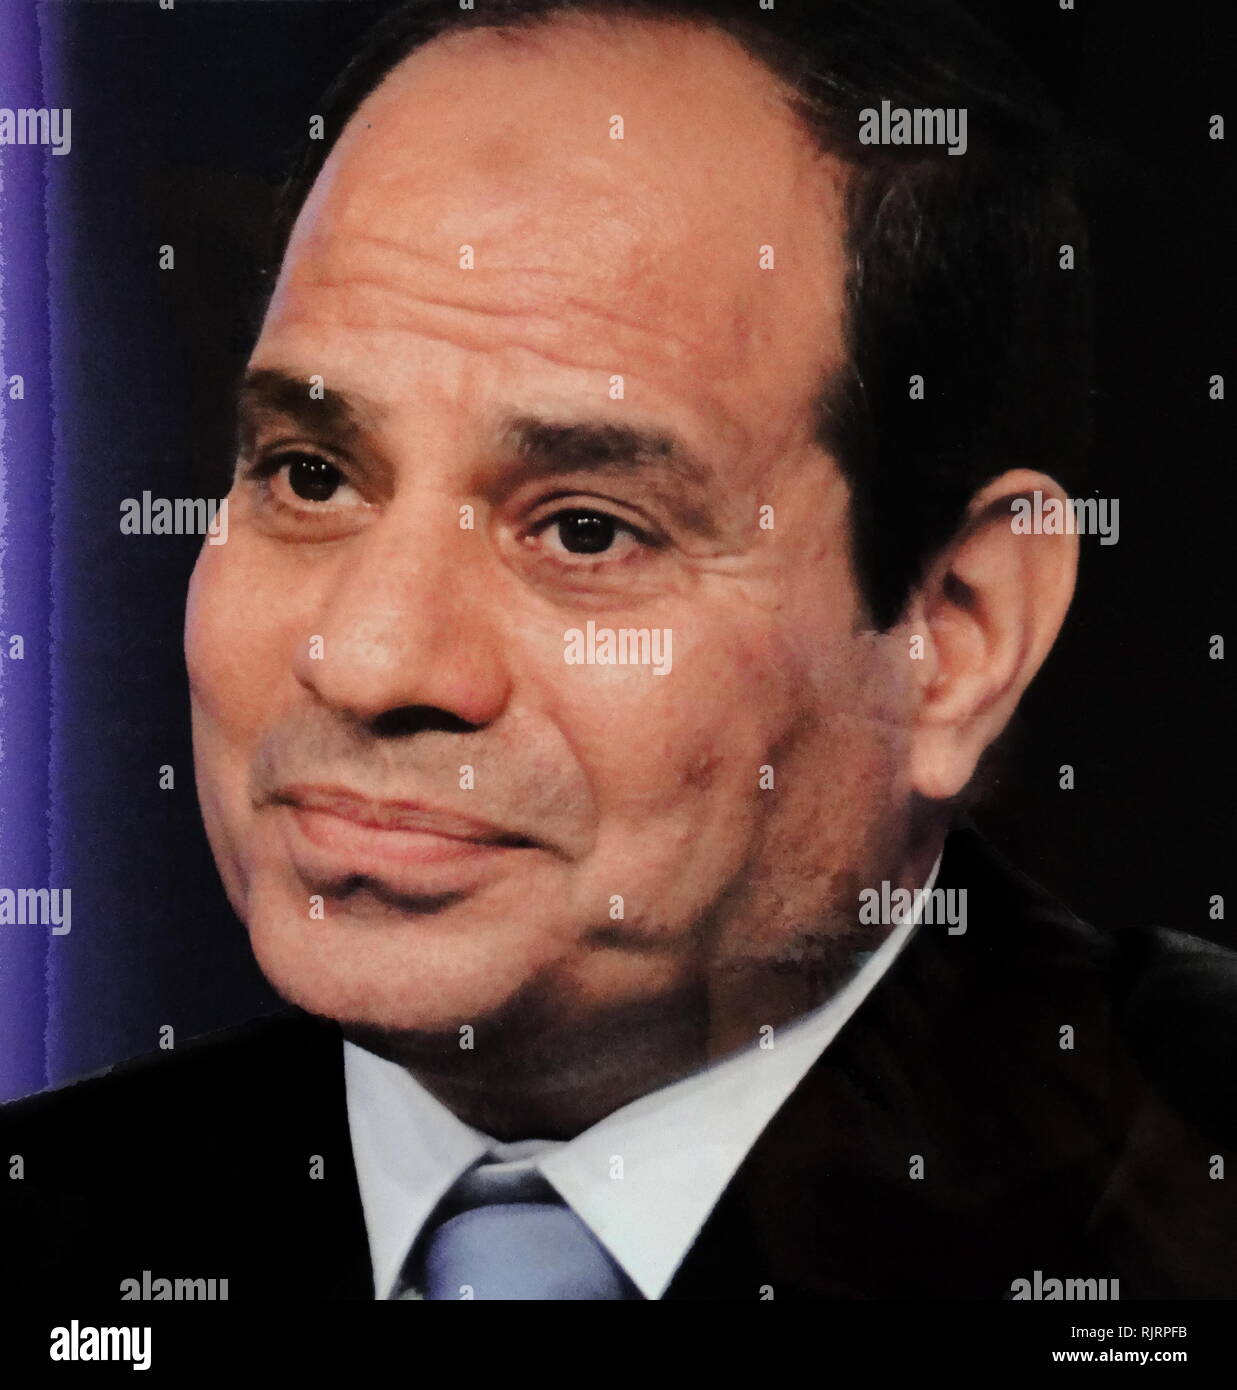 Abdel Fattah al-Sisi (né en 1954), homme politique égyptien et actuel président de l'Égypte, en fonction depuis 2014. Banque D'Images